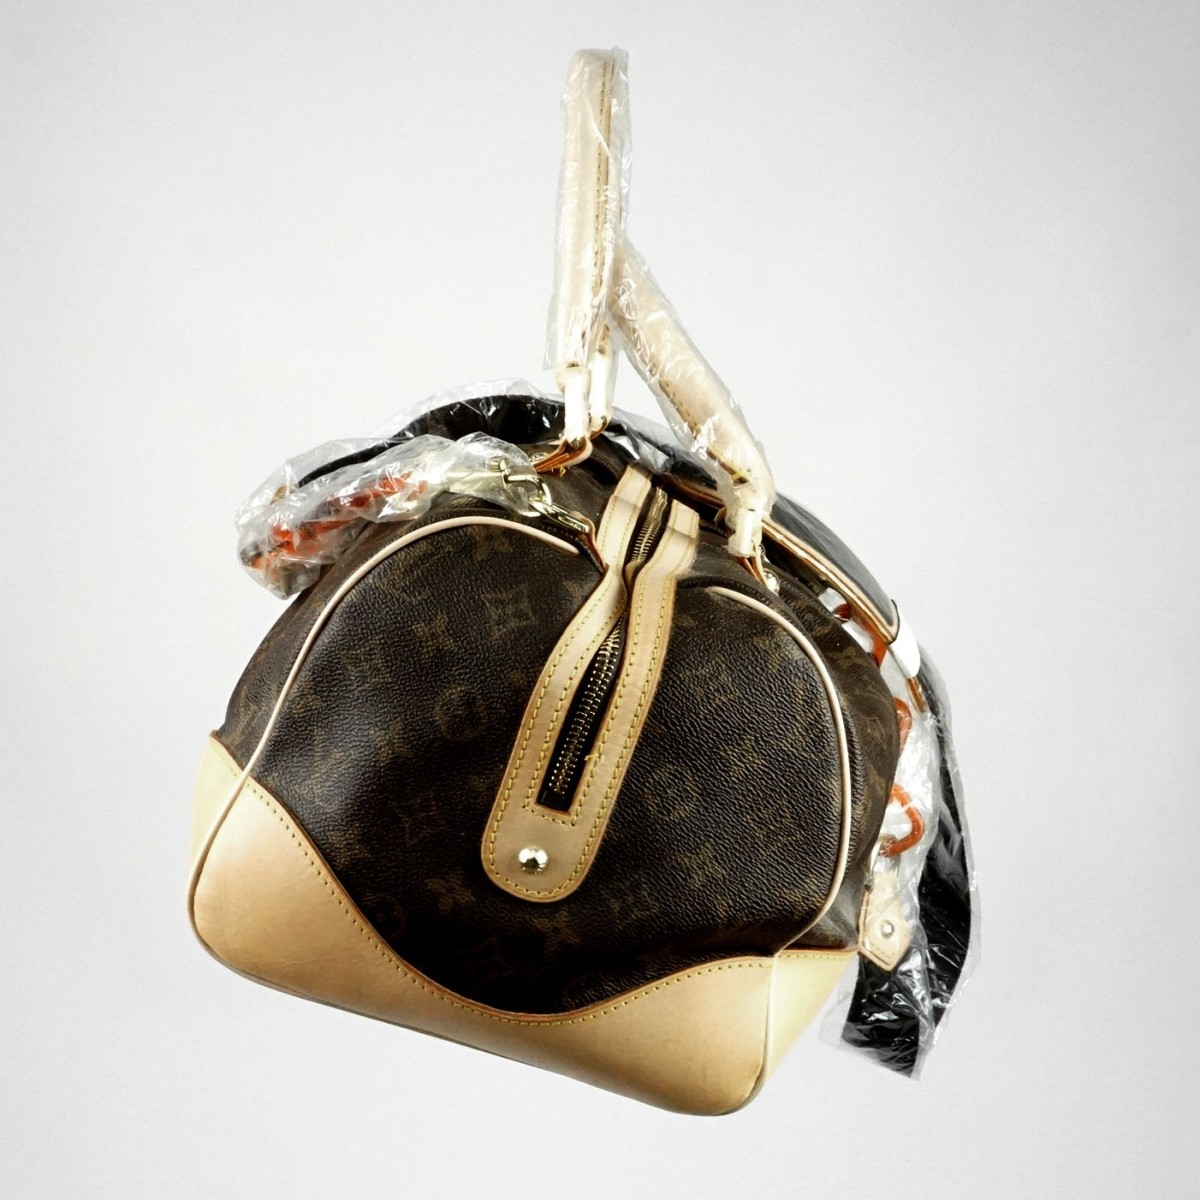 Replica Louis Vuitton Handbag